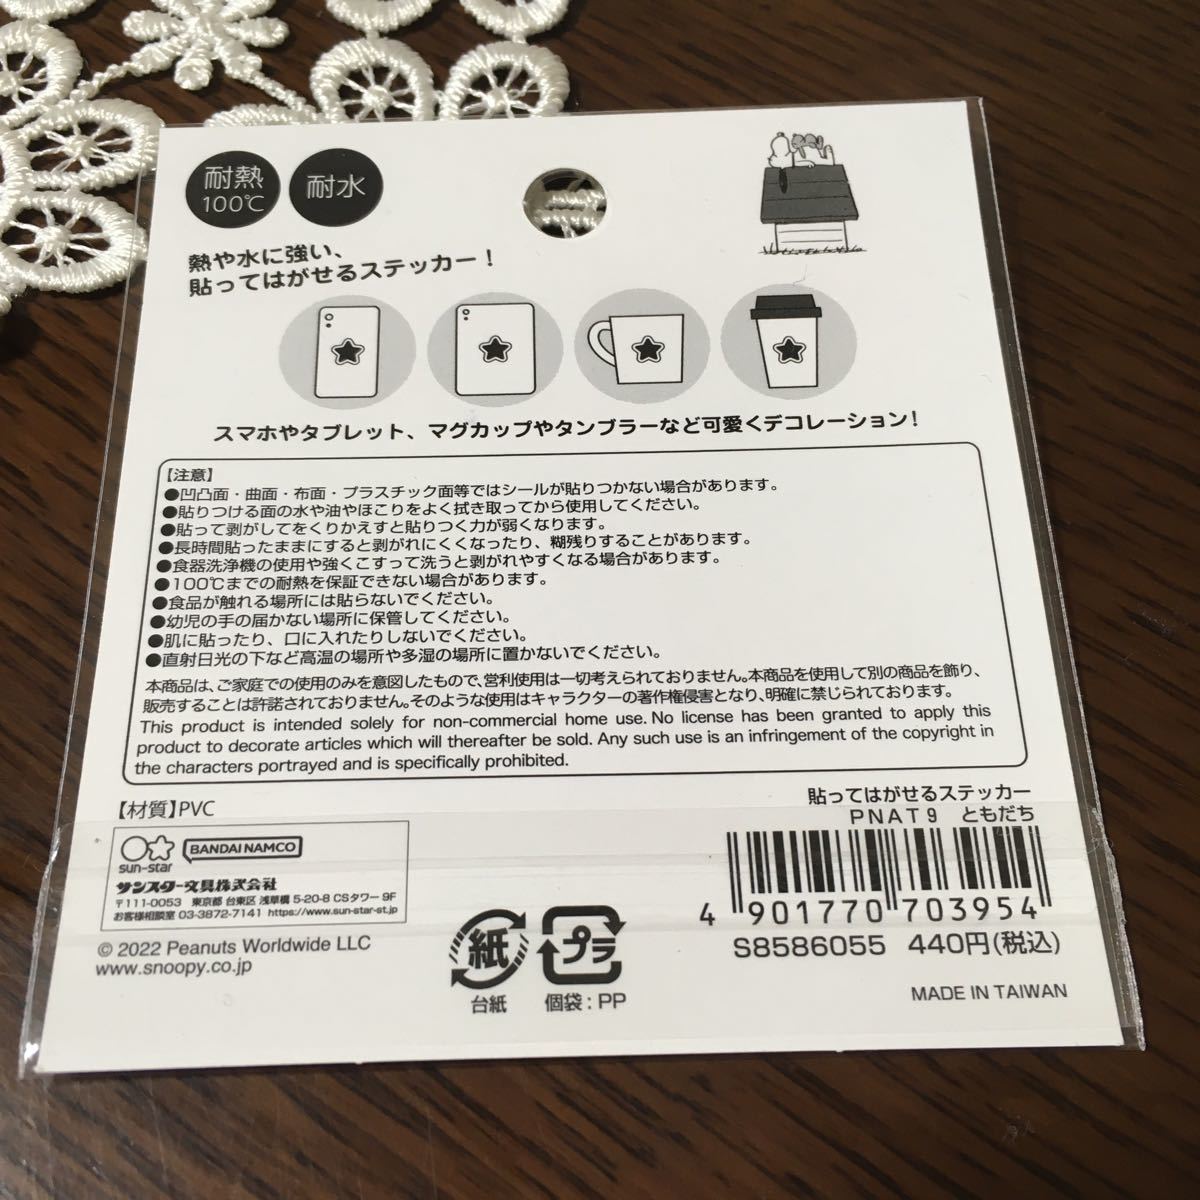  Snoopy жаростойкий водостойкий .... ... стикер наклейка стикер нашивка стоимость доставки 84 иен новый товар ....